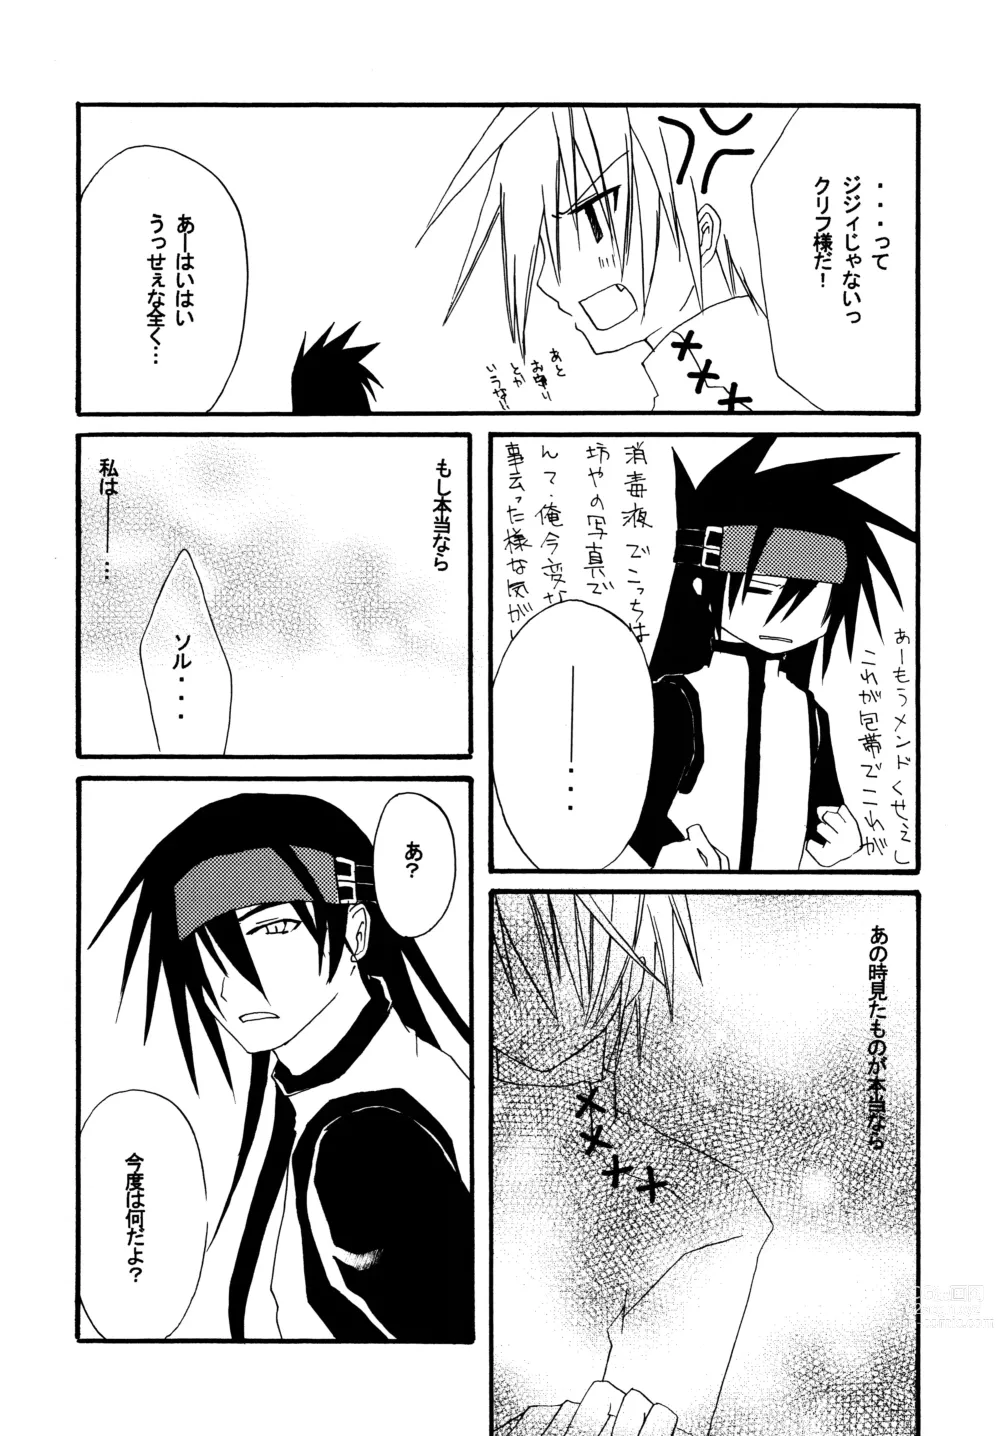 Page 8 of doujinshi Zettai Ryouiki ~Absolute Area~